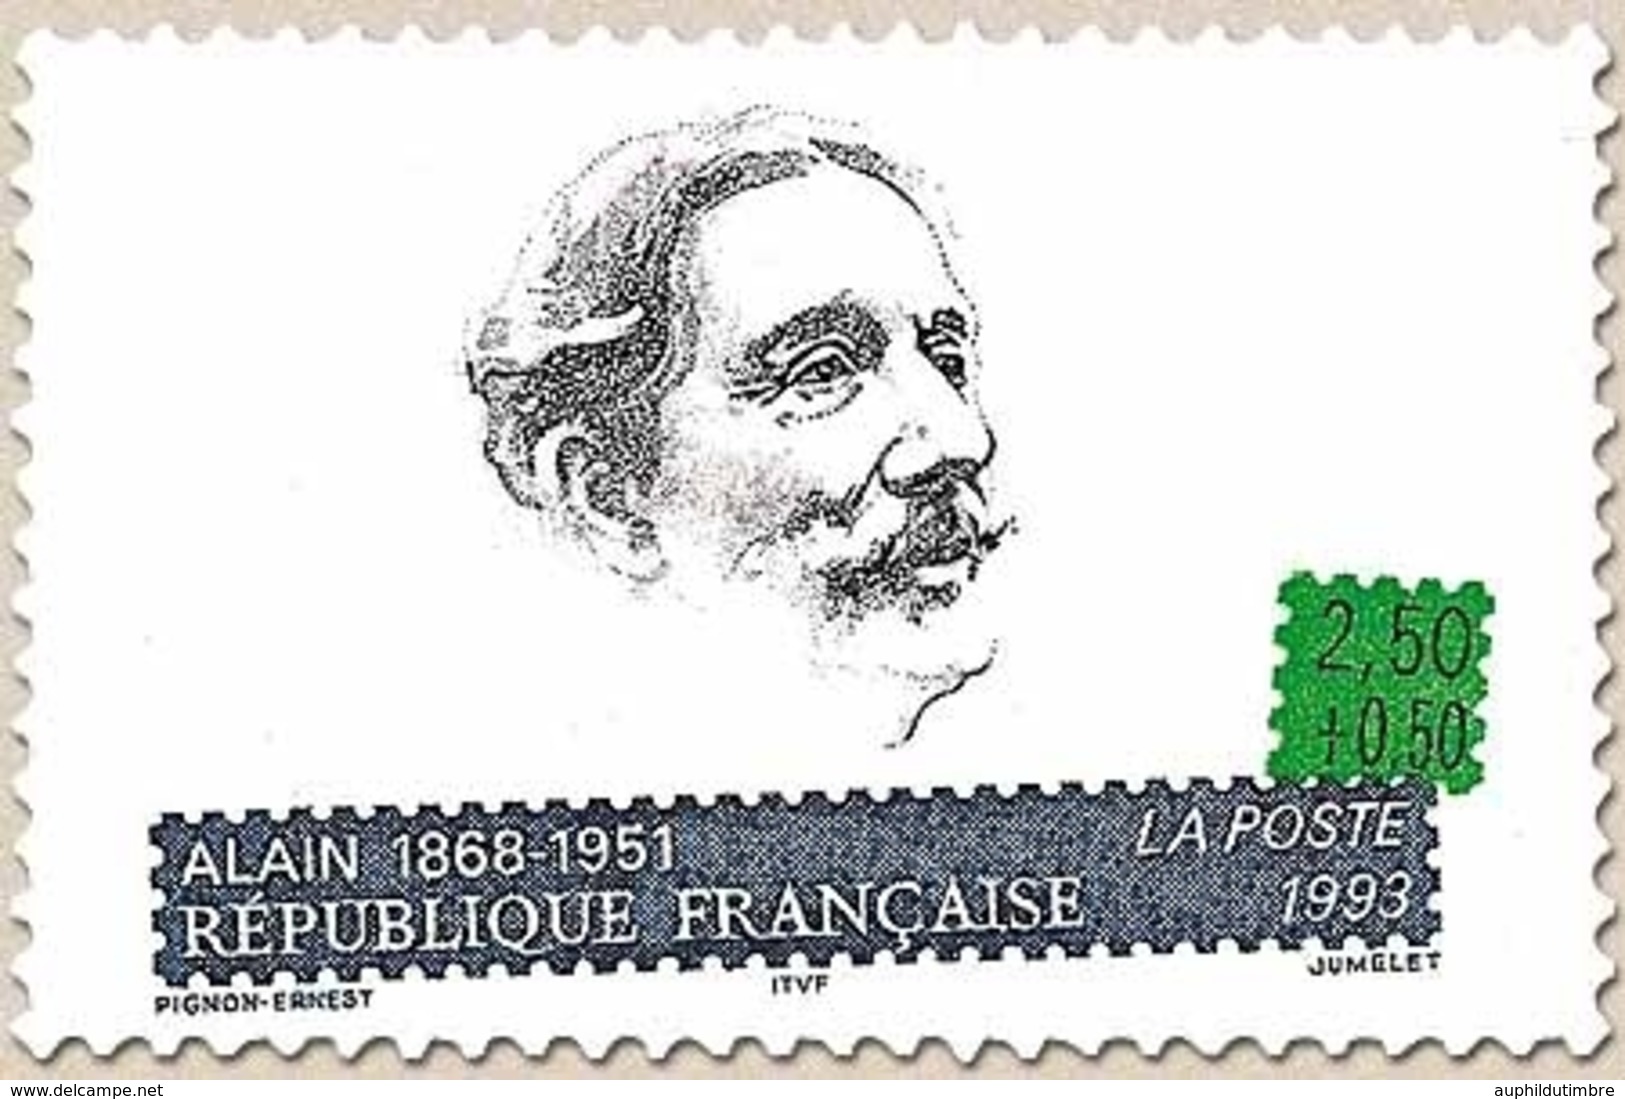 Personnages Célèbres. Ecrivains Français. Emile Chartier, Dit Alain (1868-1951)  2f.50 + 50c. Y2800 - Unused Stamps